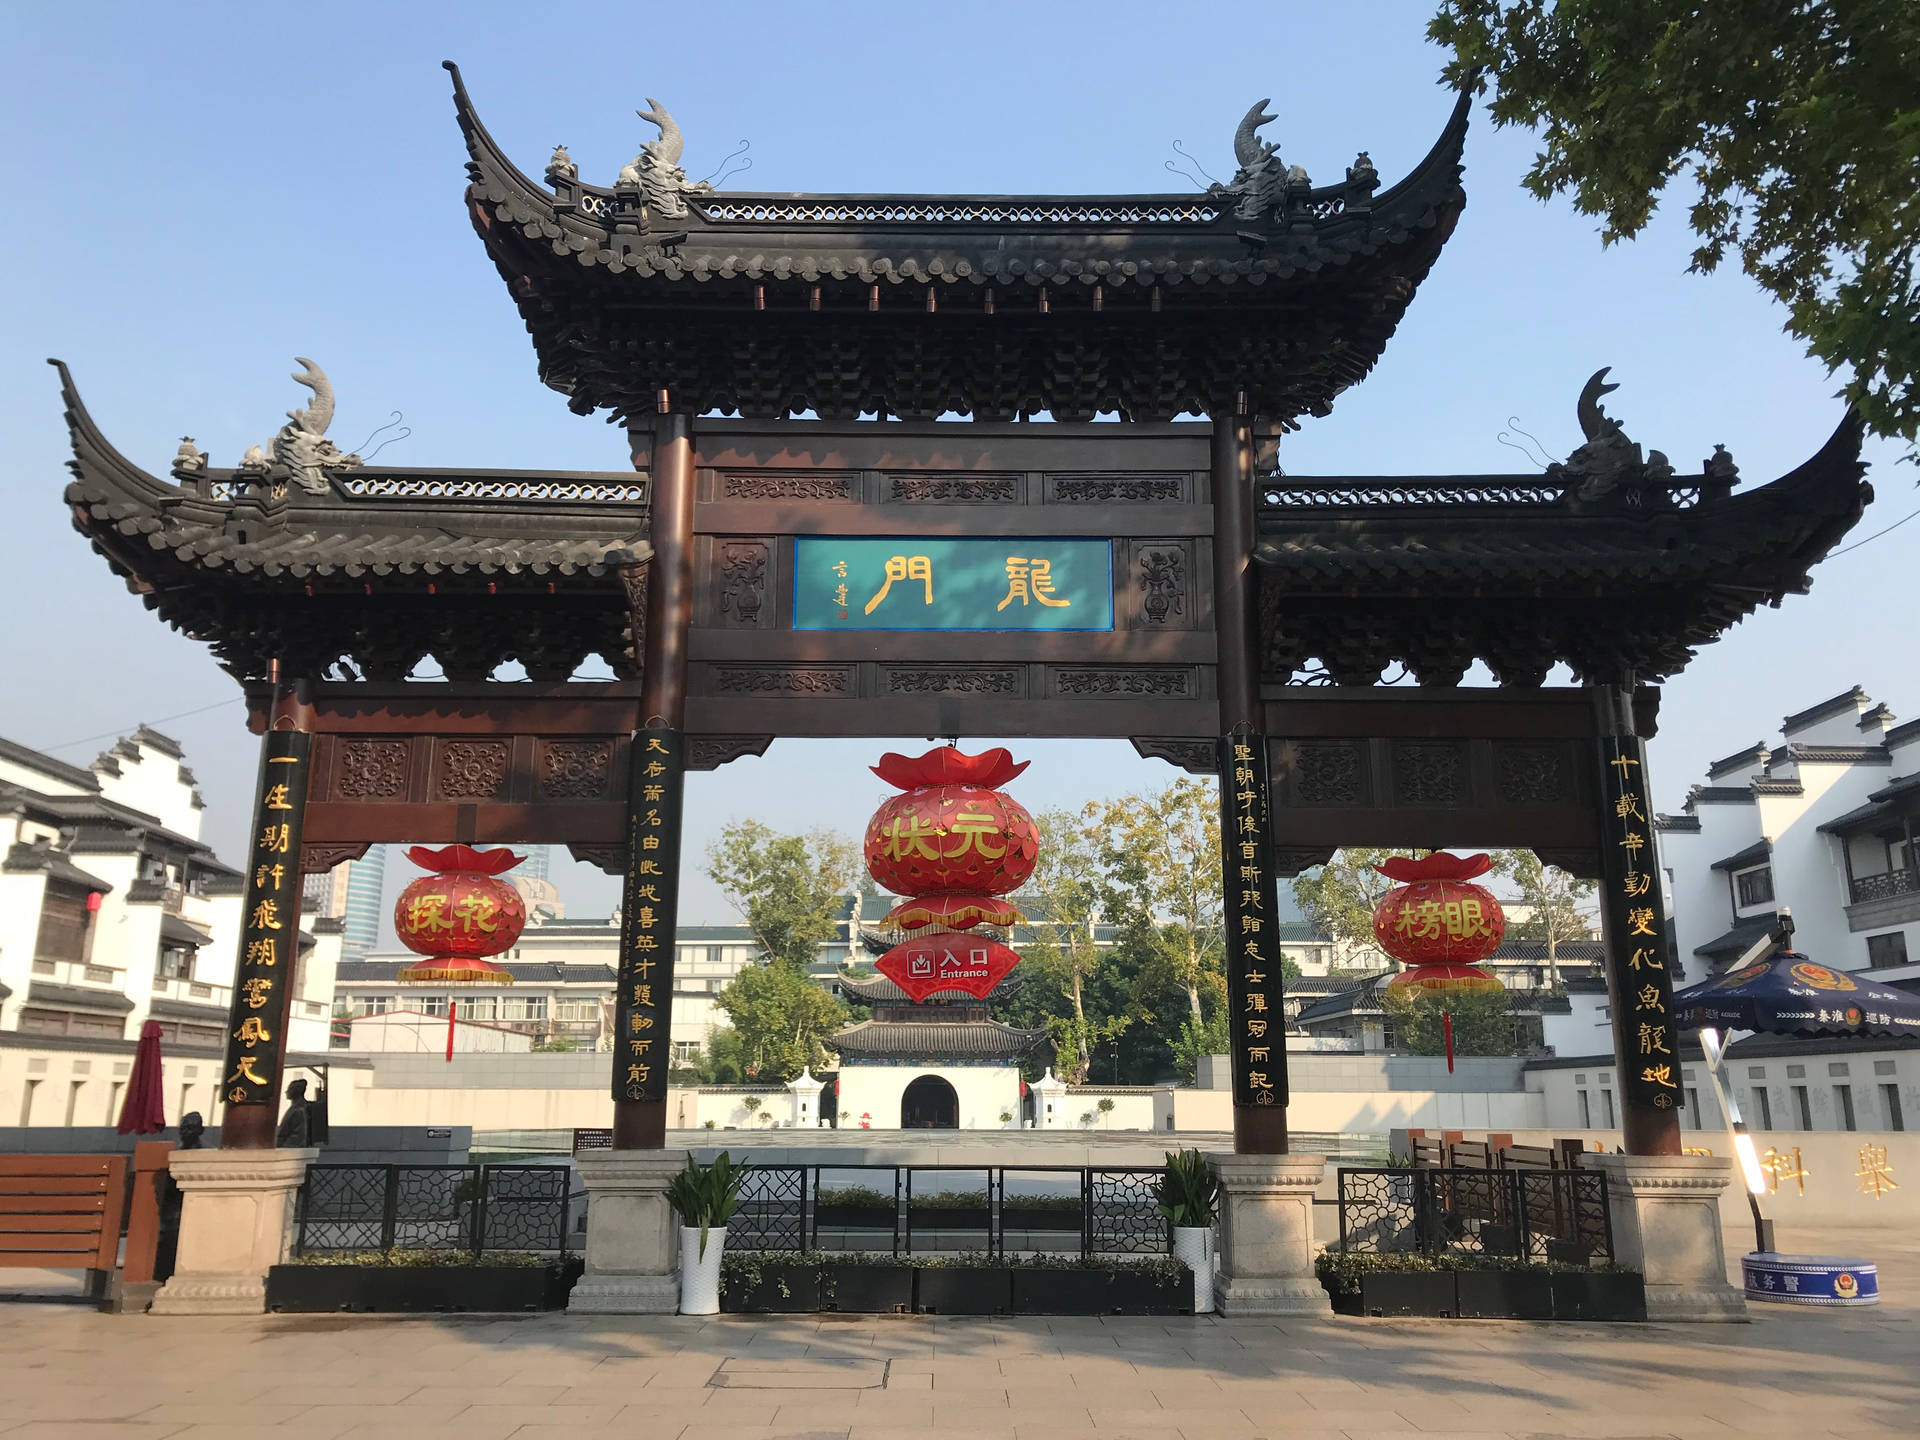 Nanjing Old East Gate